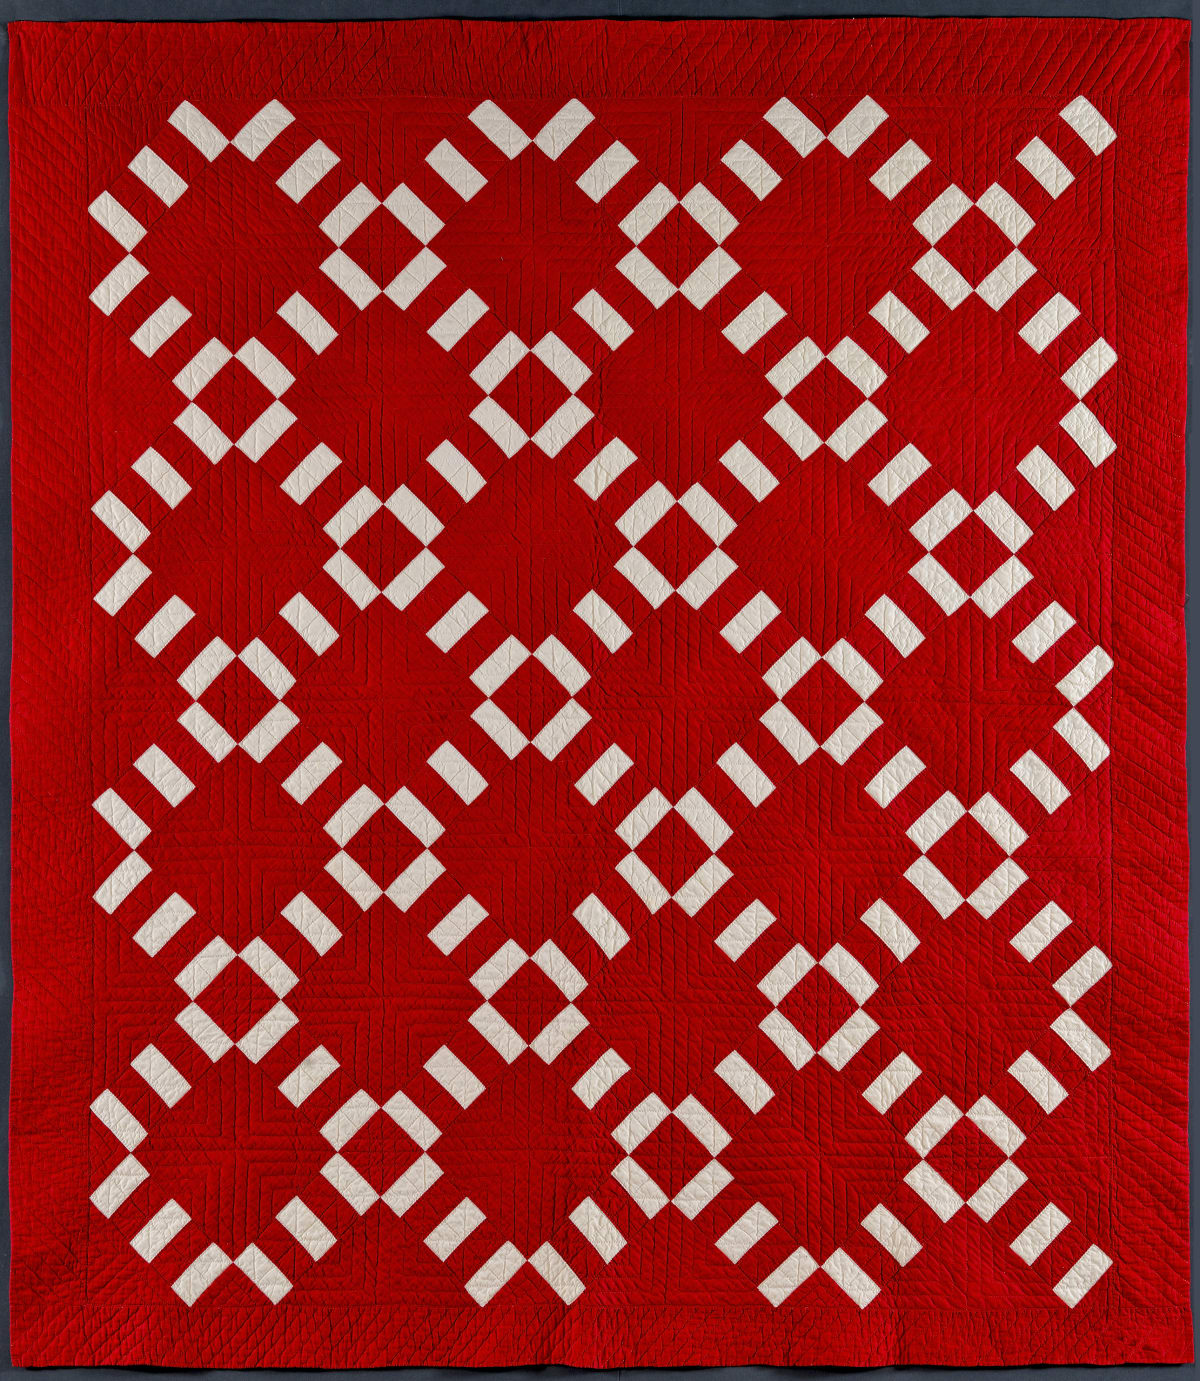 The original quilt